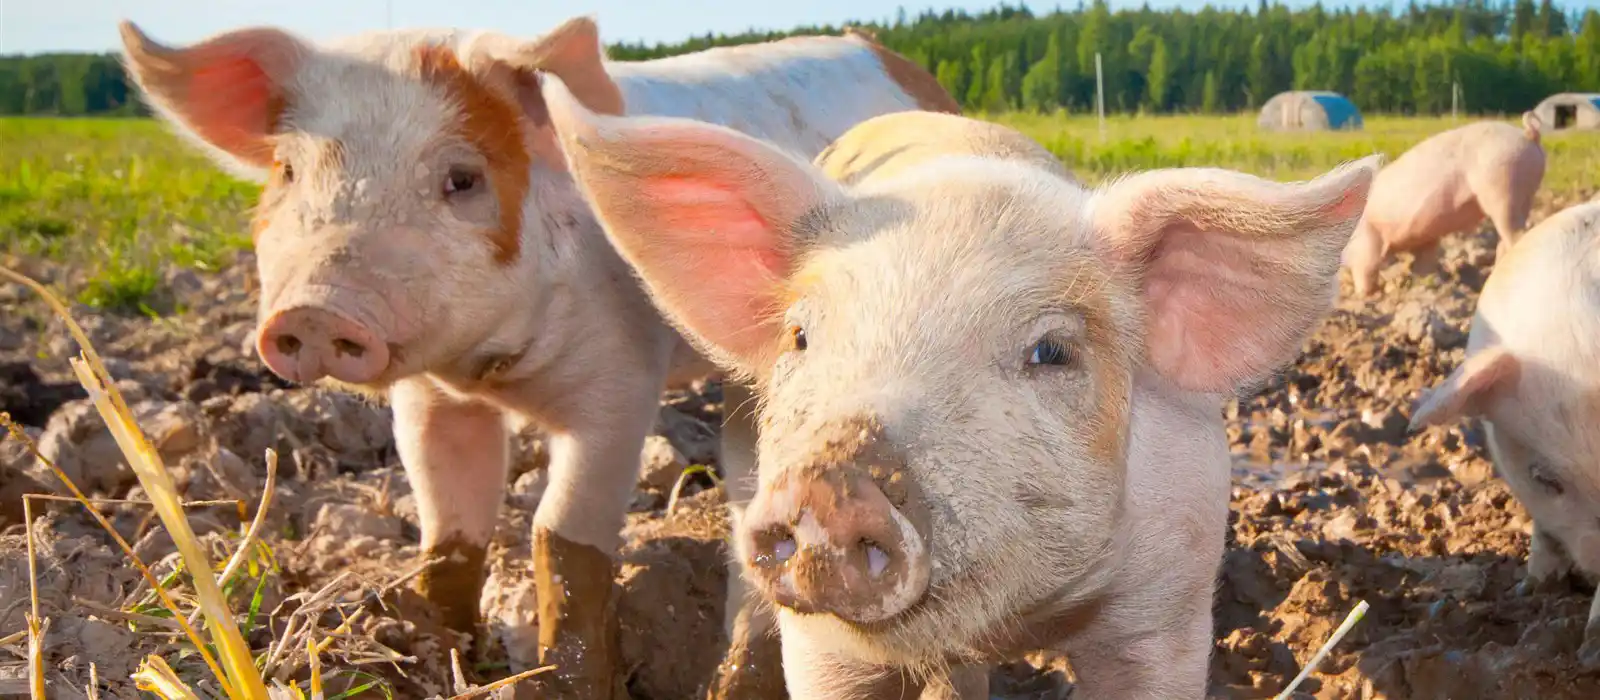 Piglets on a farm